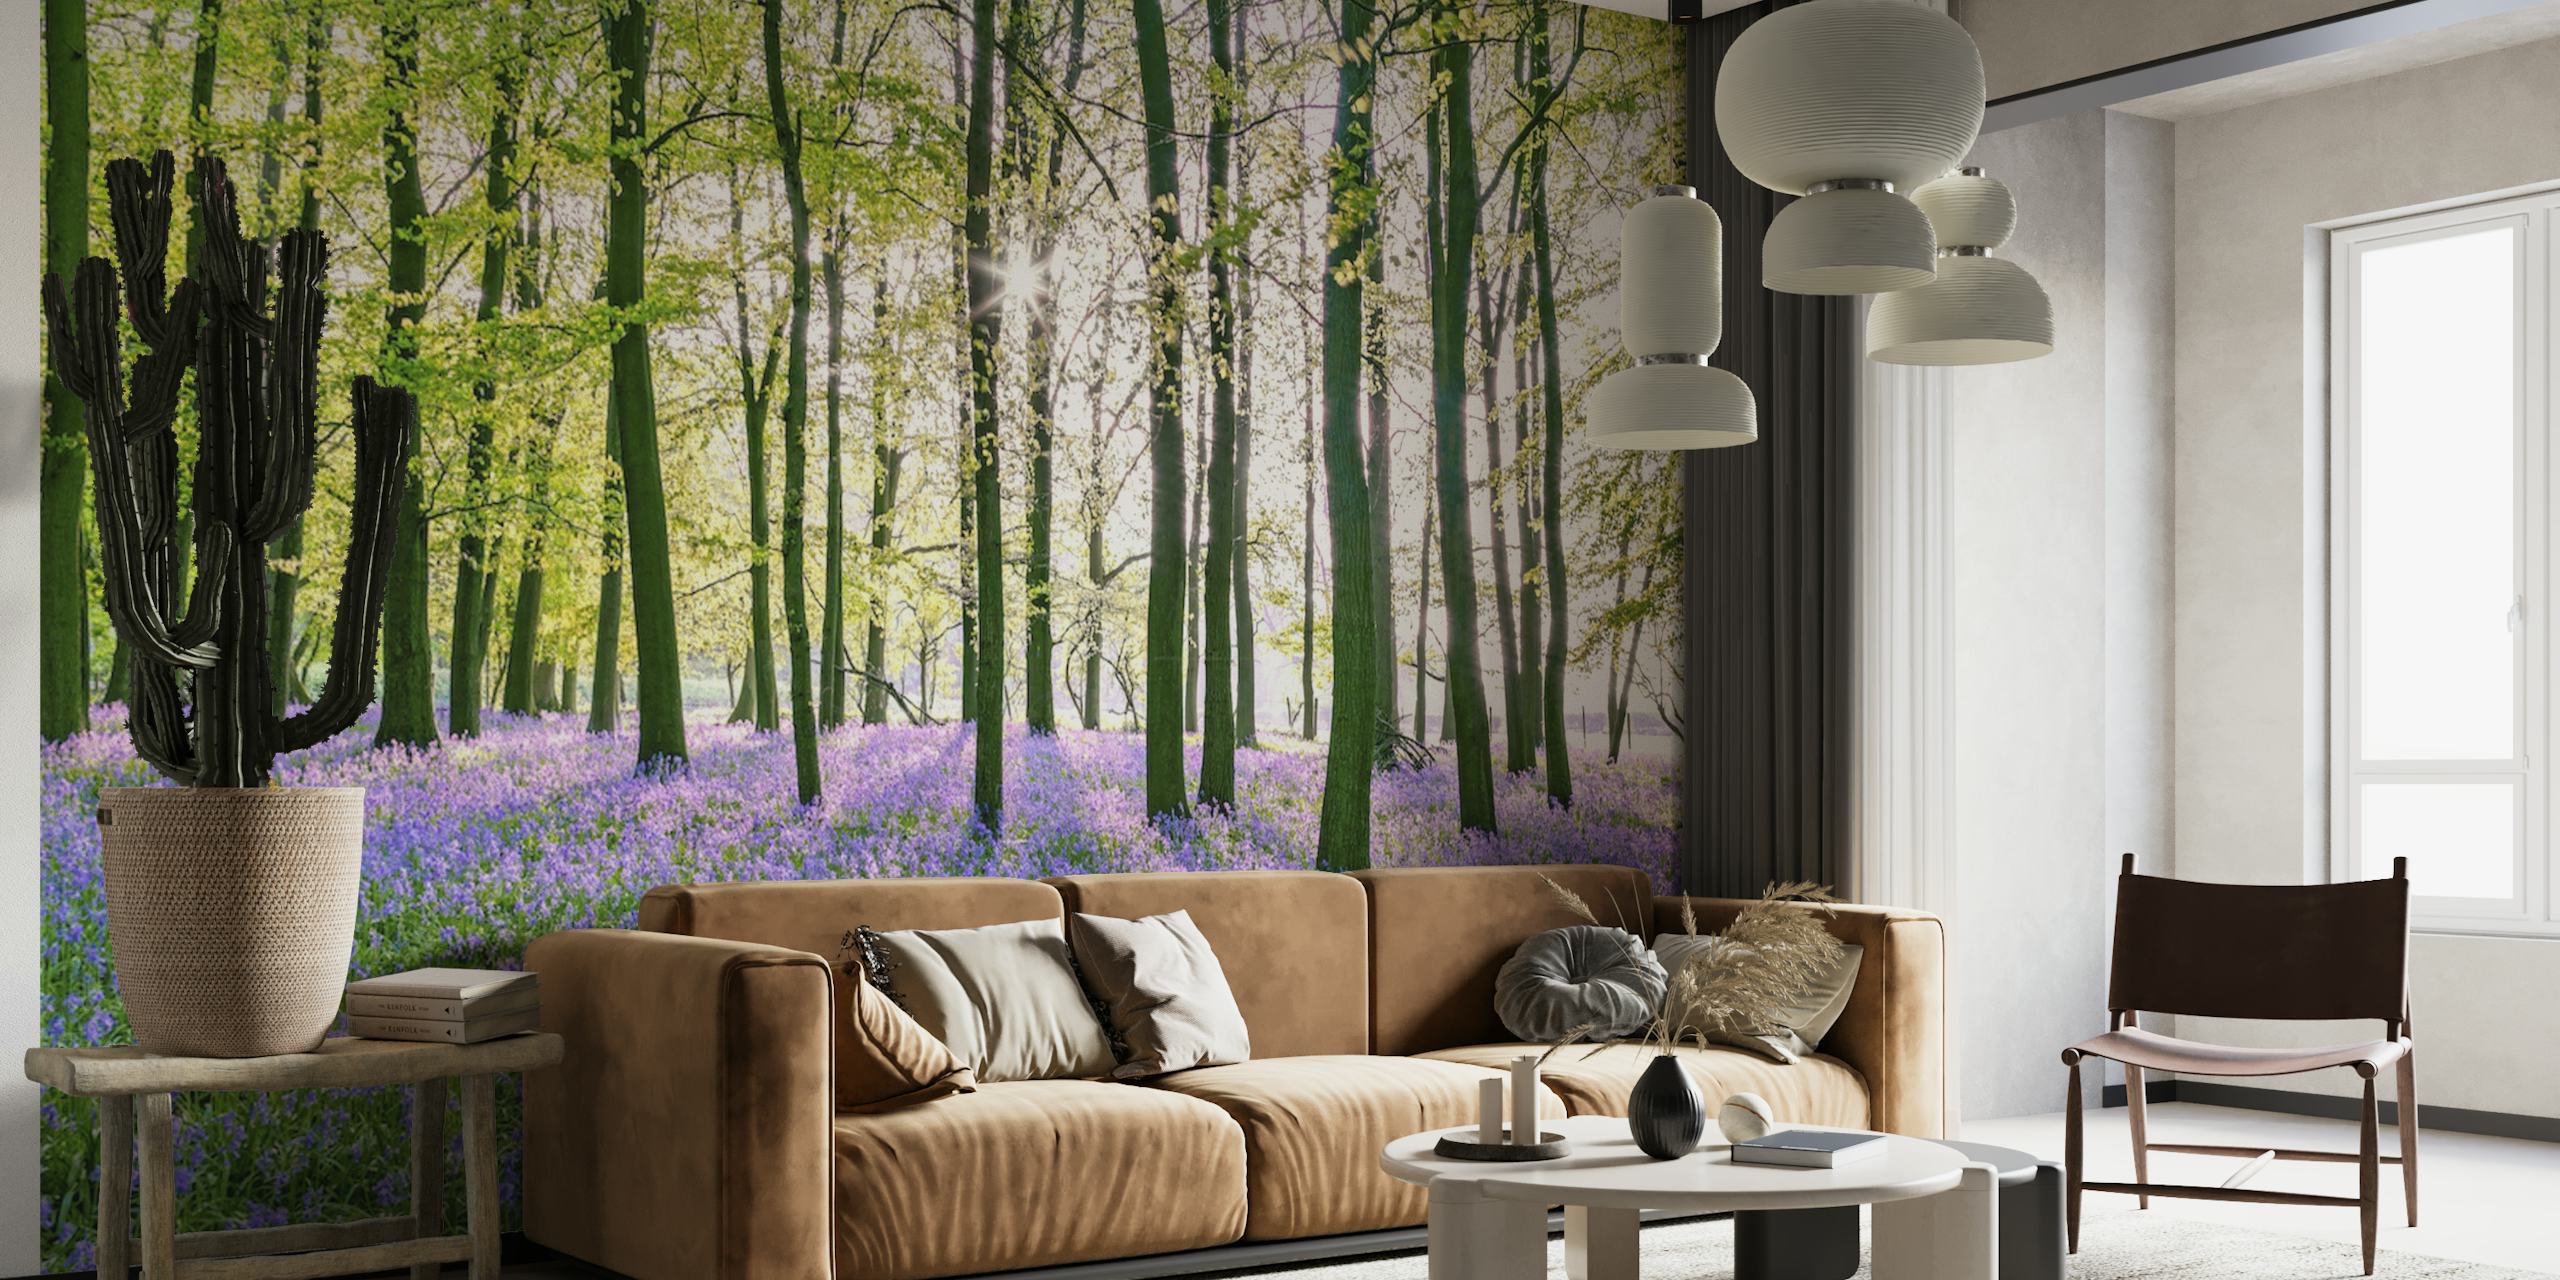 Eine ruhige Fototapete im Glockenblumenwald mit einem üppigen grünen Blätterdach und leuchtend violetten Blumen, die den Waldboden bedecken.